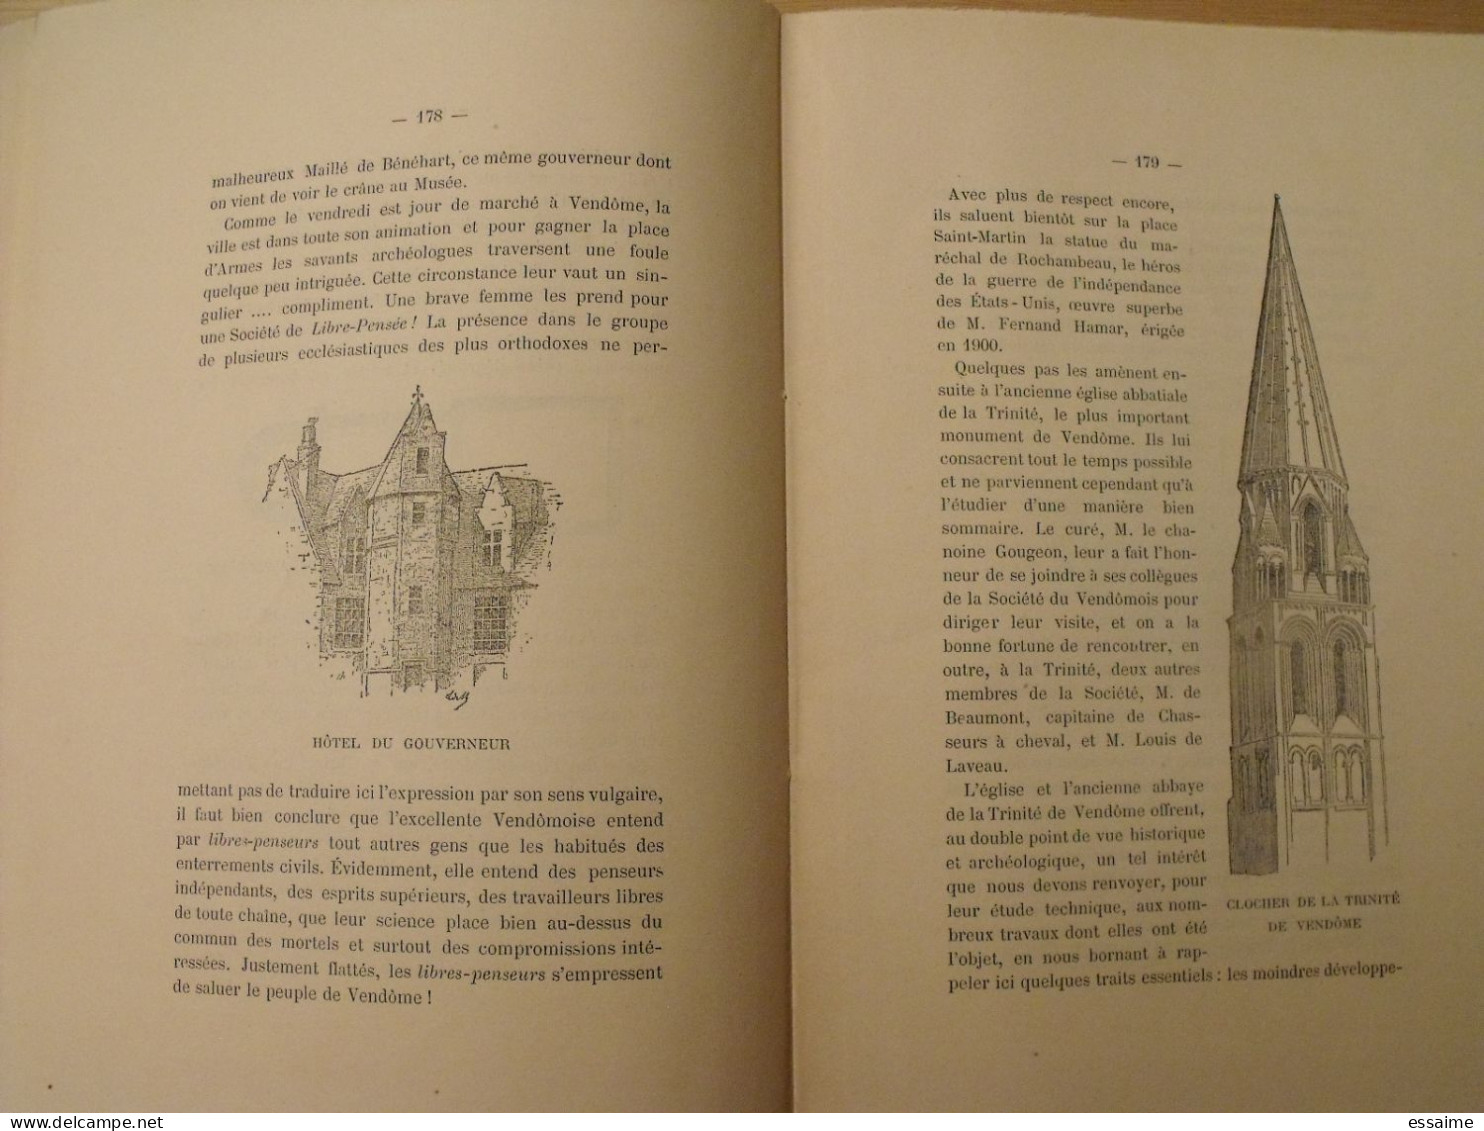 revue historique et archéologique du Maine. année 1904, 2ème semestre (3 livraisons). tome LVI. Mamers, Le Mans